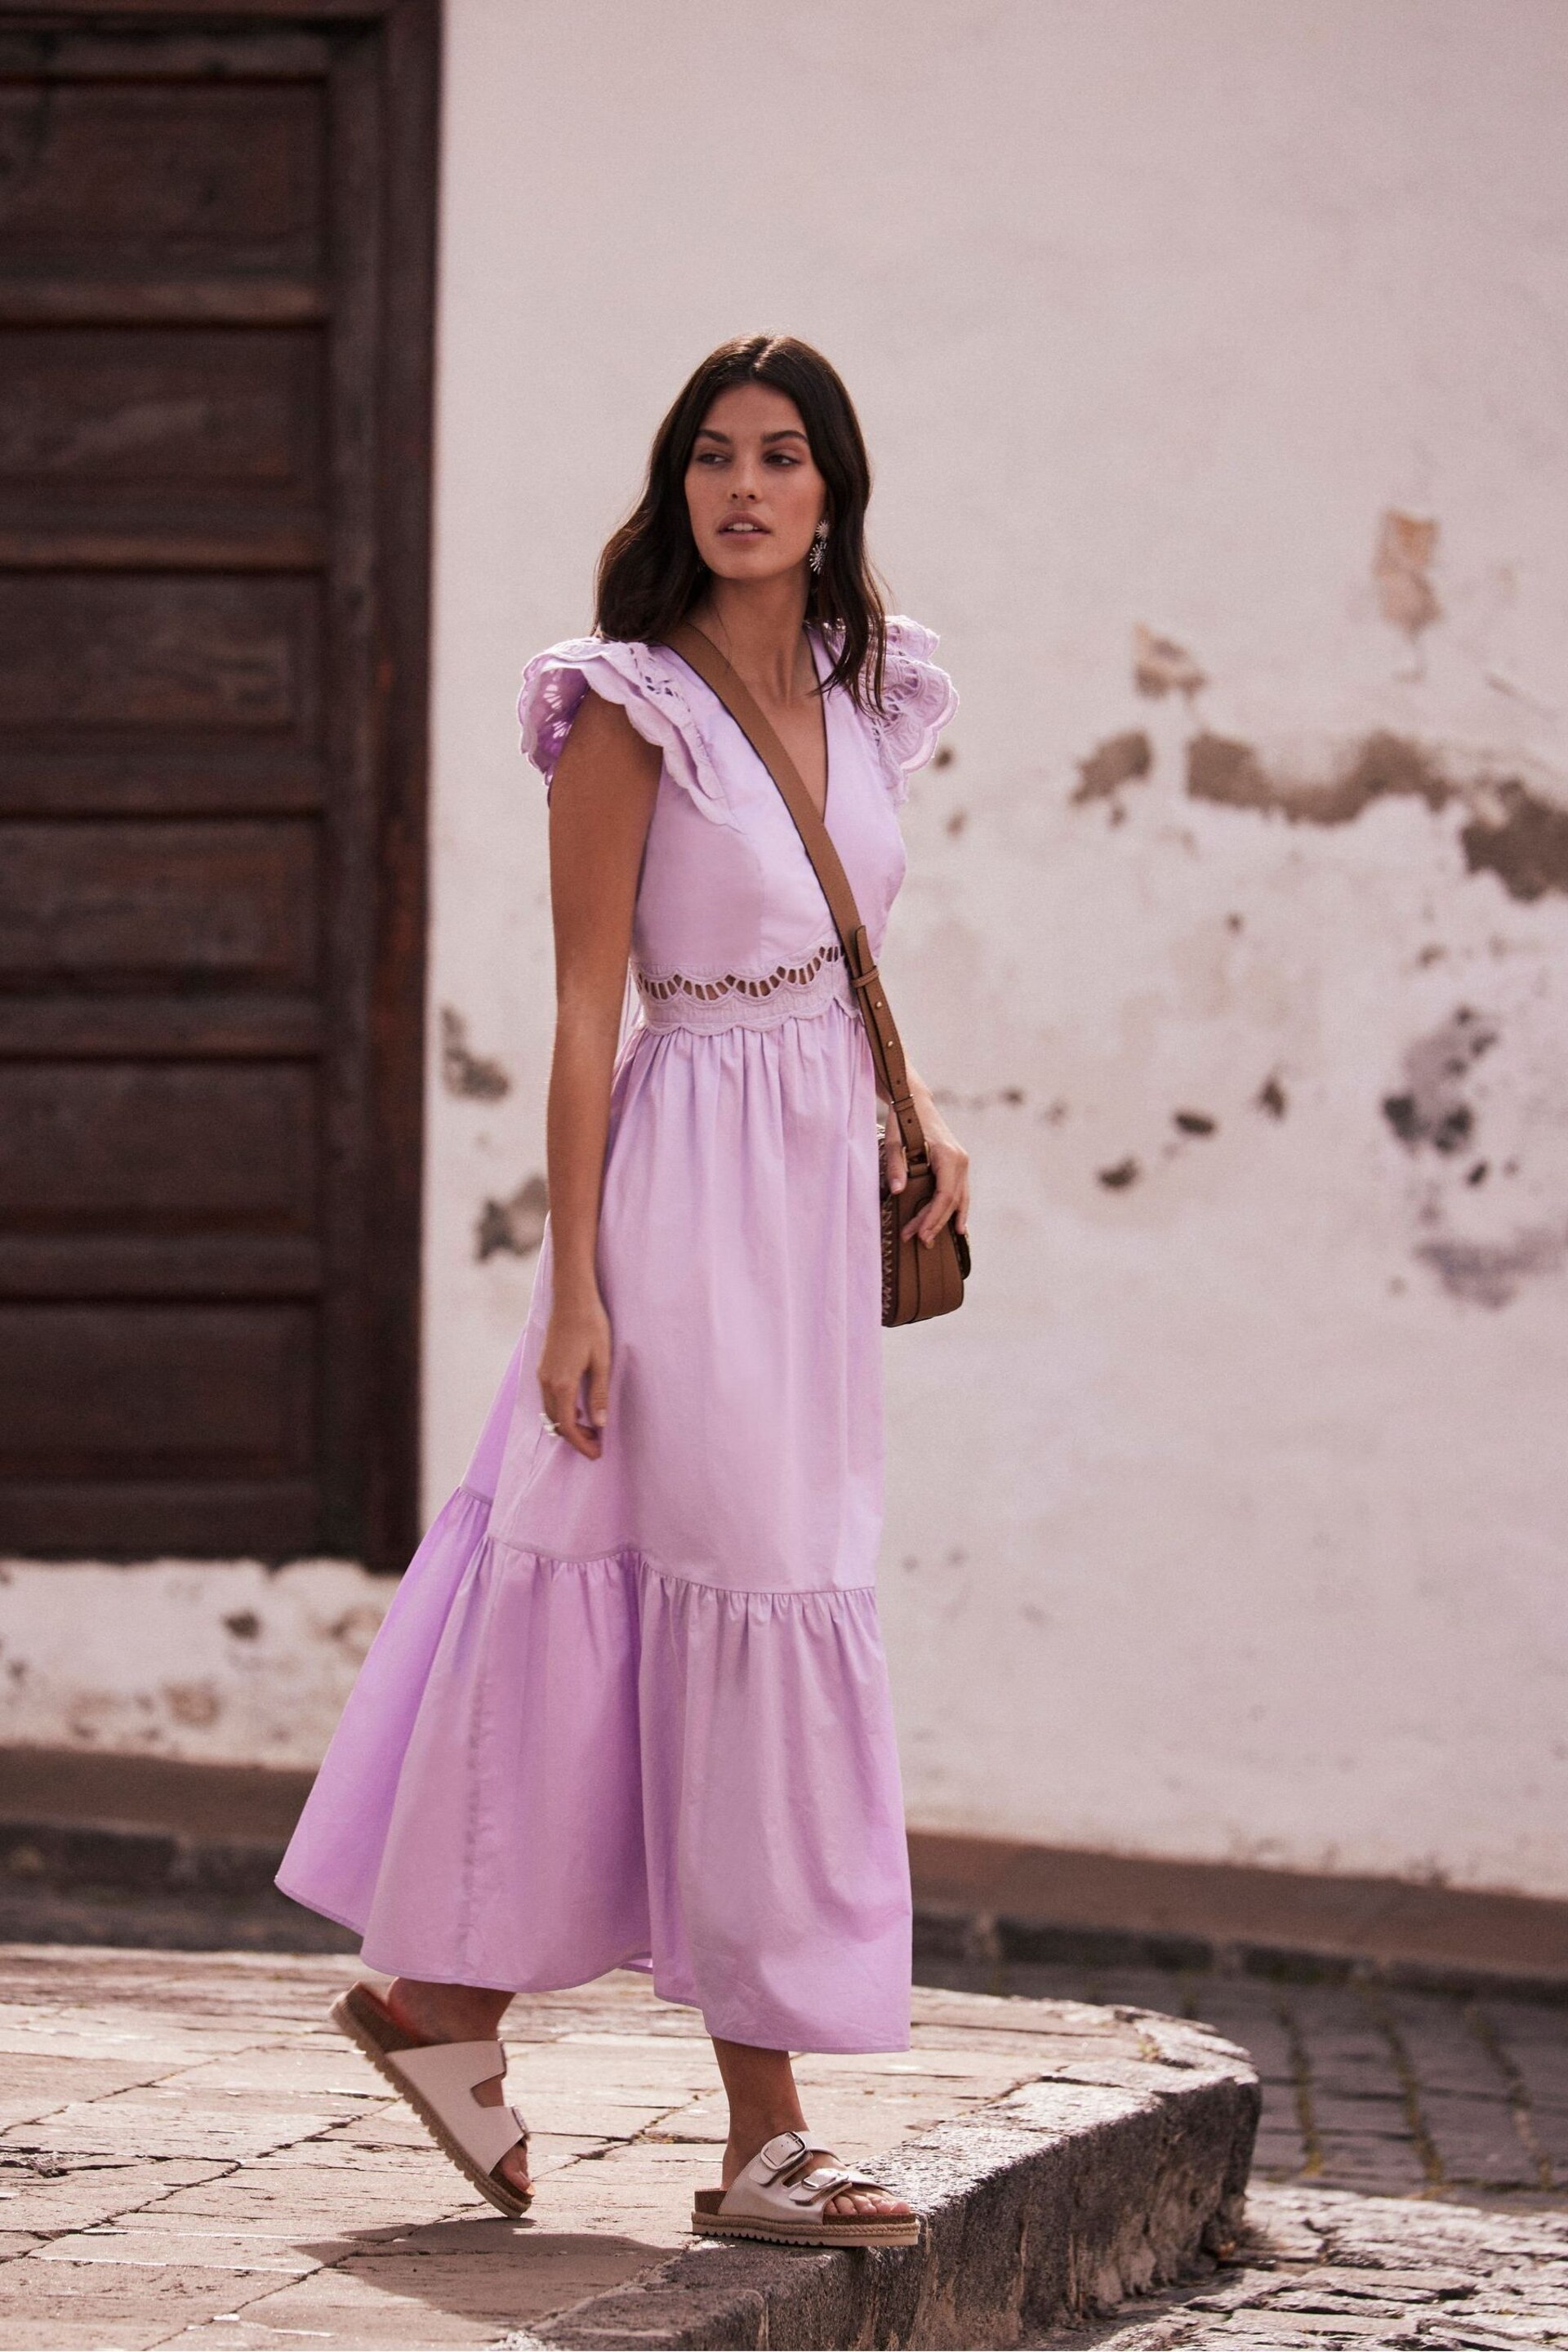 Mint Velvet Purple Cotton Maxi Dress - Image 1 of 4